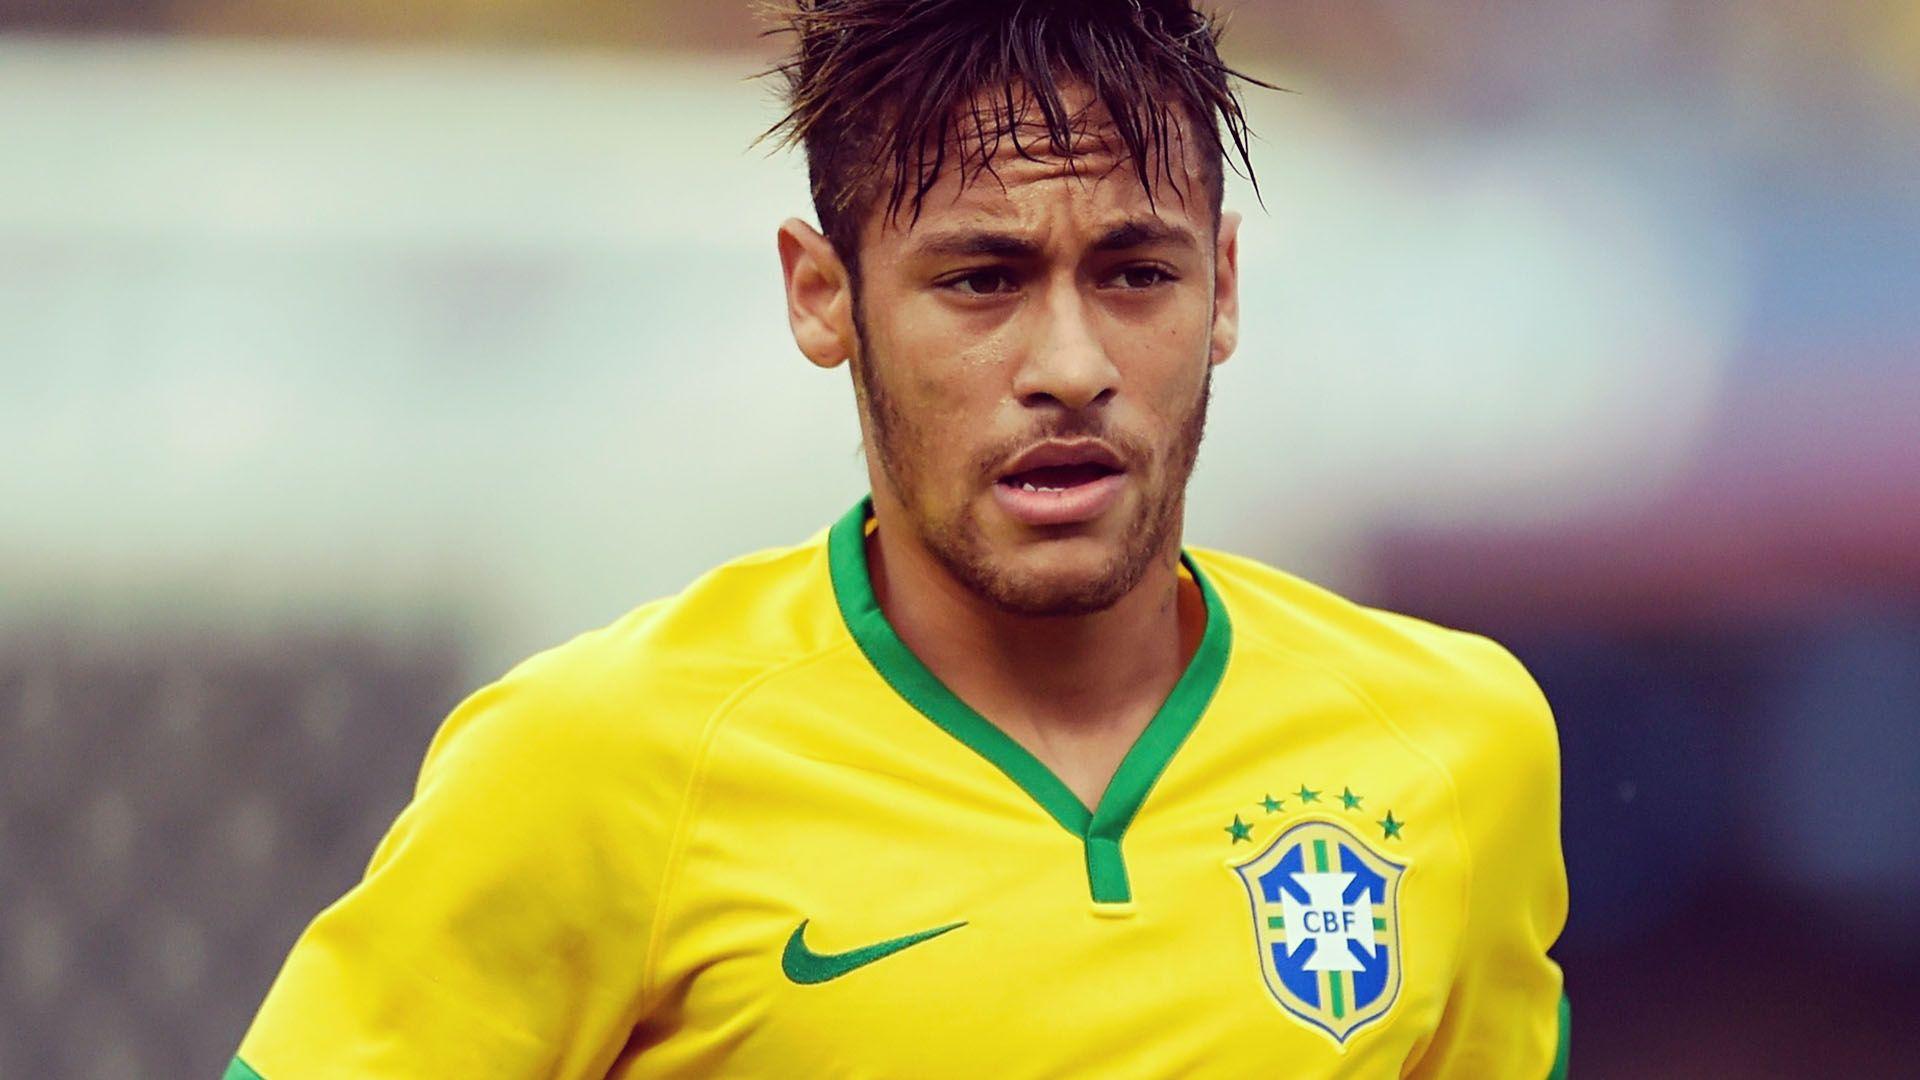 Neymar Wallpaper HD Image Download